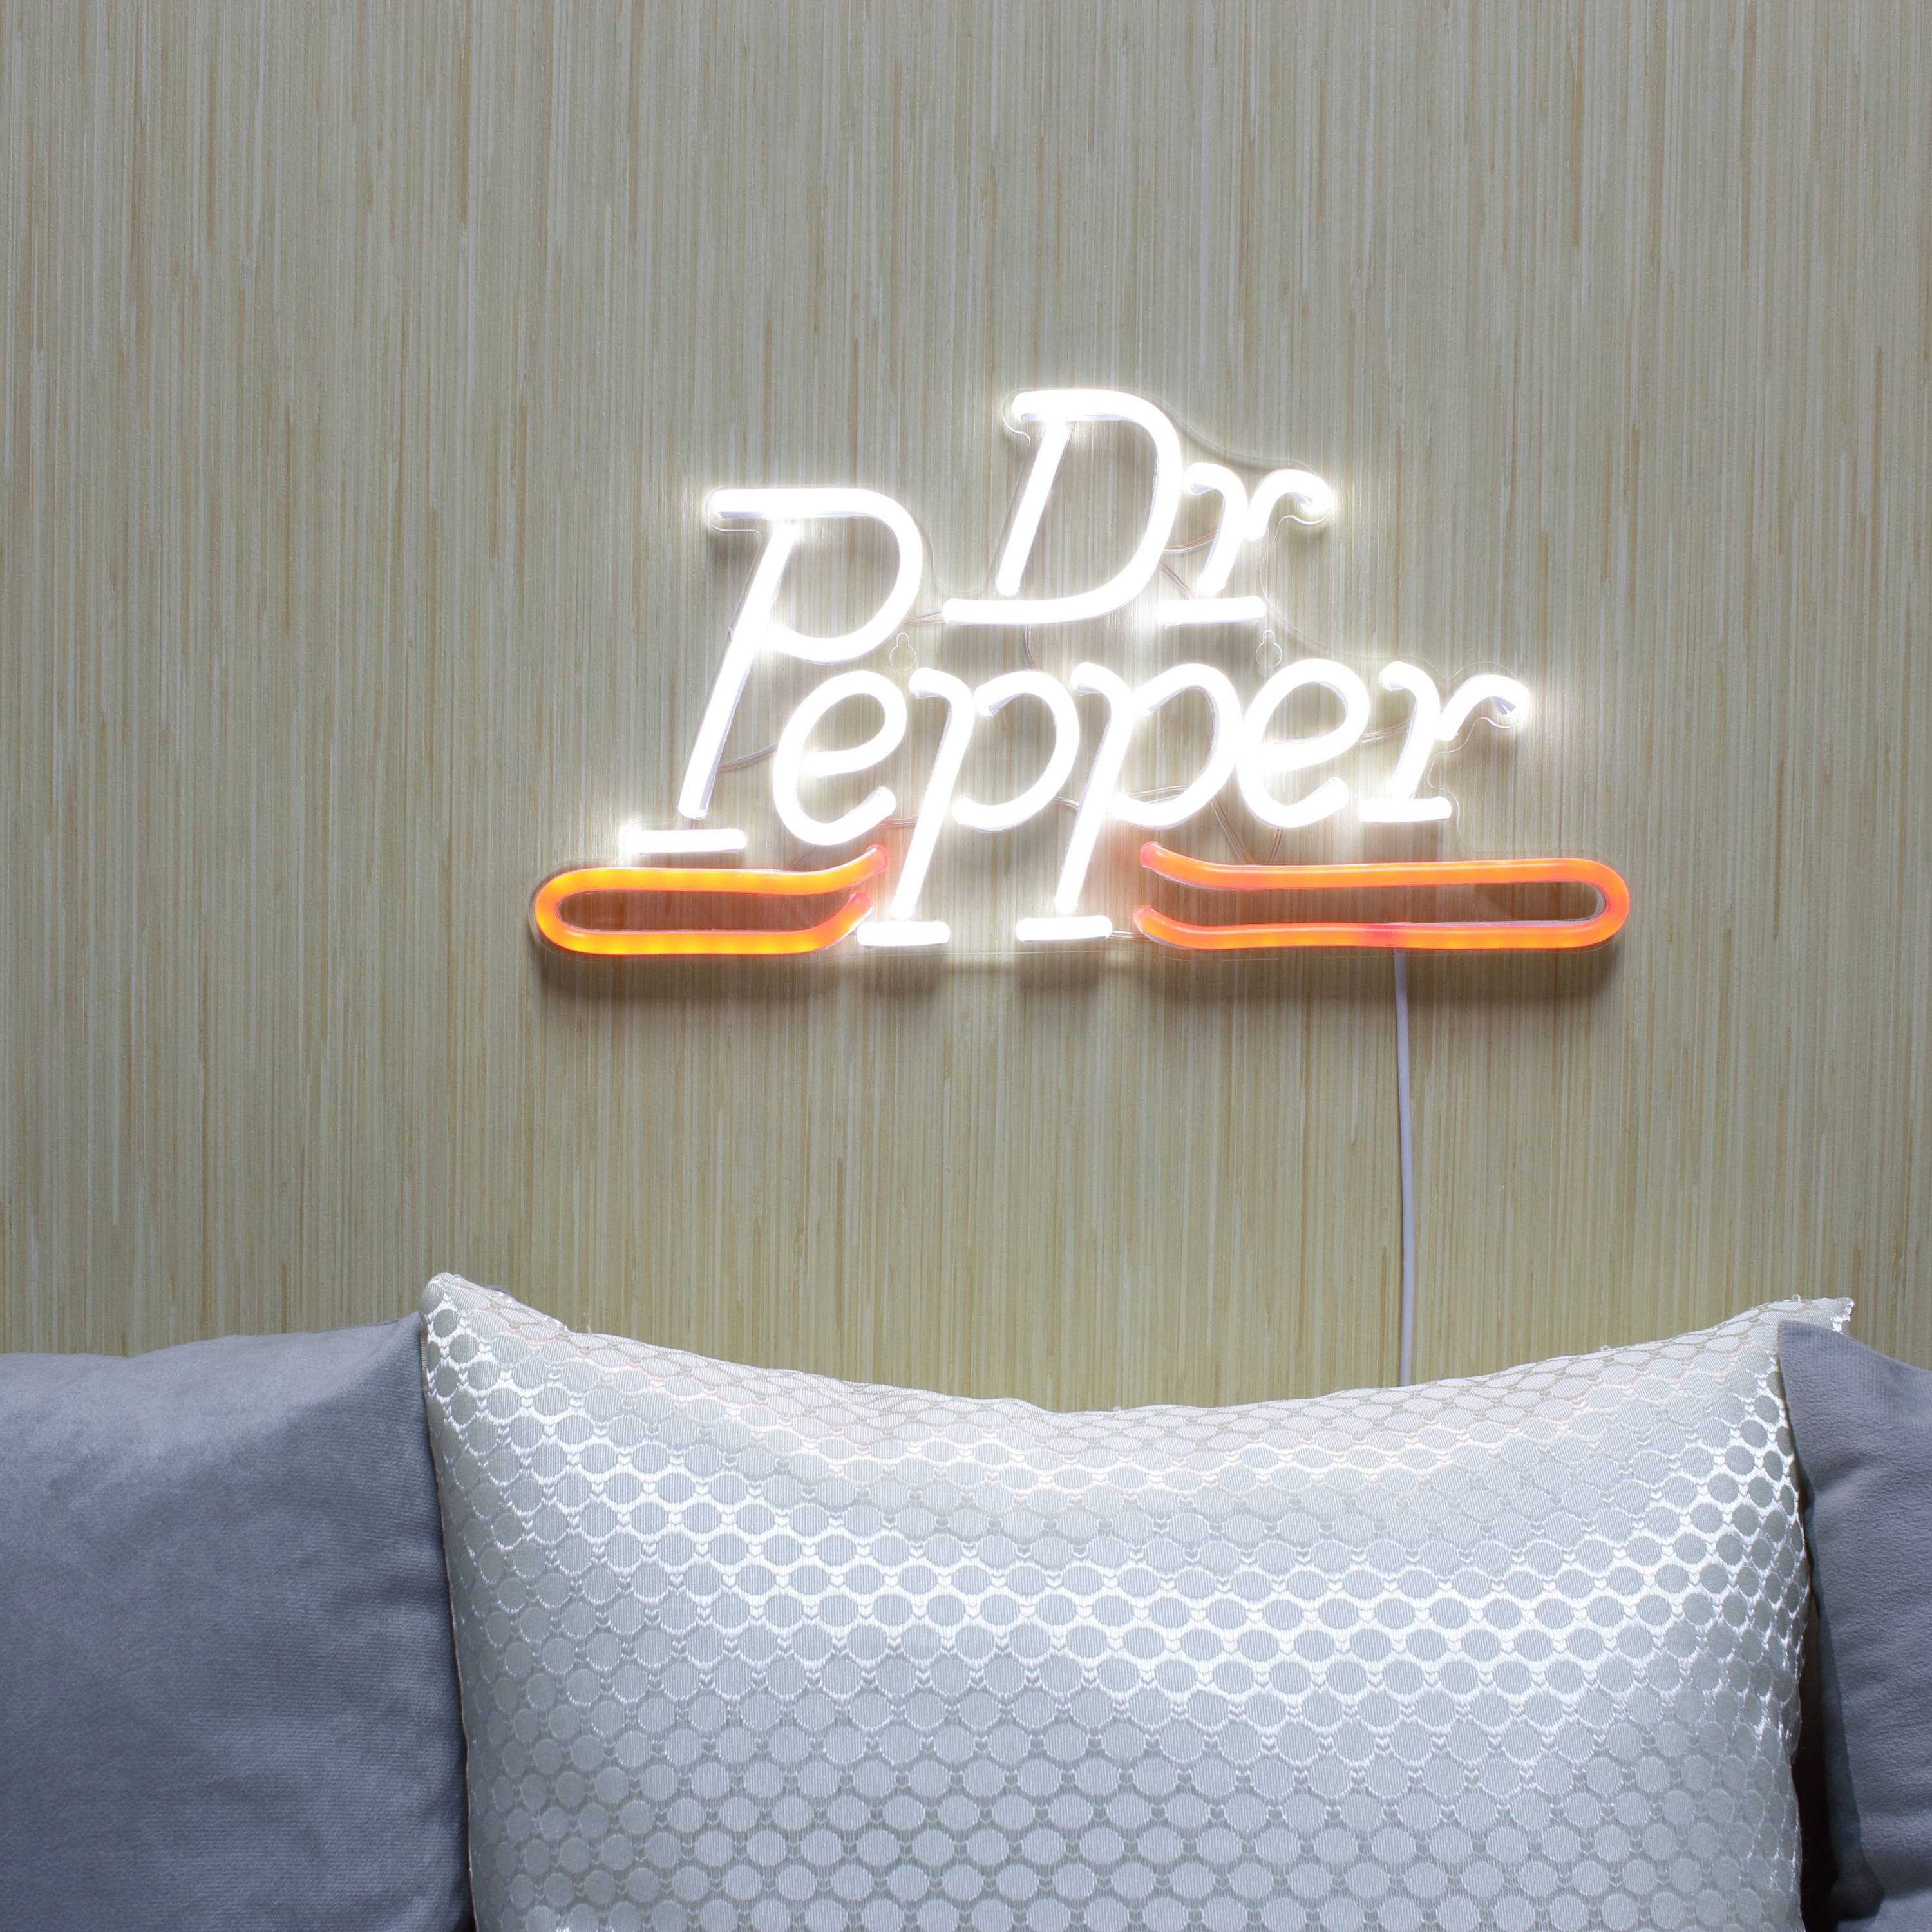 Dr Pepper Large Flex Neon LED Sign